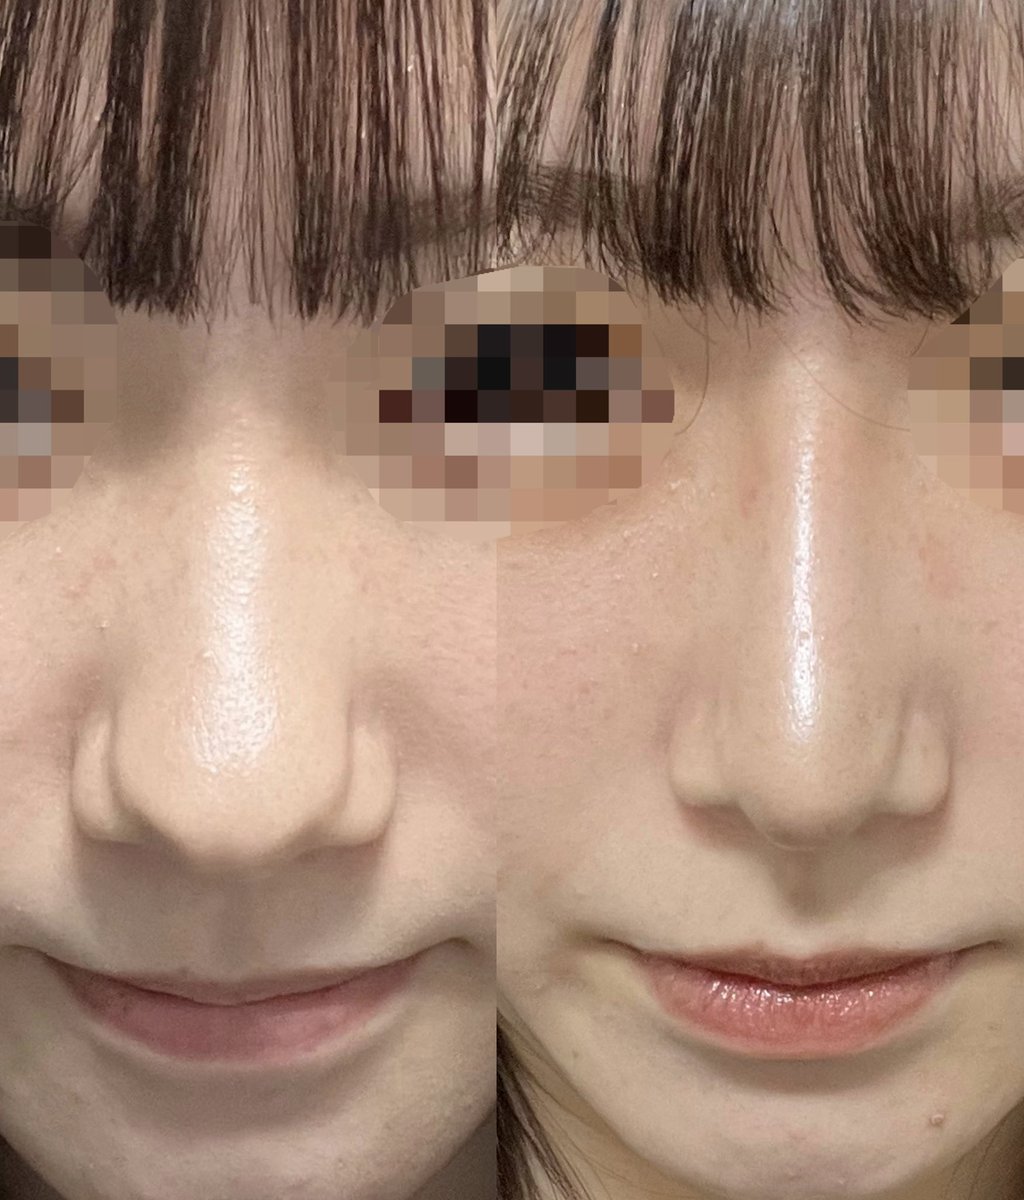 ヒット整形外科さんで手術をして頂いてから2ヶ月程経ちました🙆🏻‍♀️✨鼻筋がだいぶ細くなって顔全体がすっきりして見えるようになりました😭👏 #ヒット整形外科  #韓国整形  #韓国鼻整形 #鼻整形 